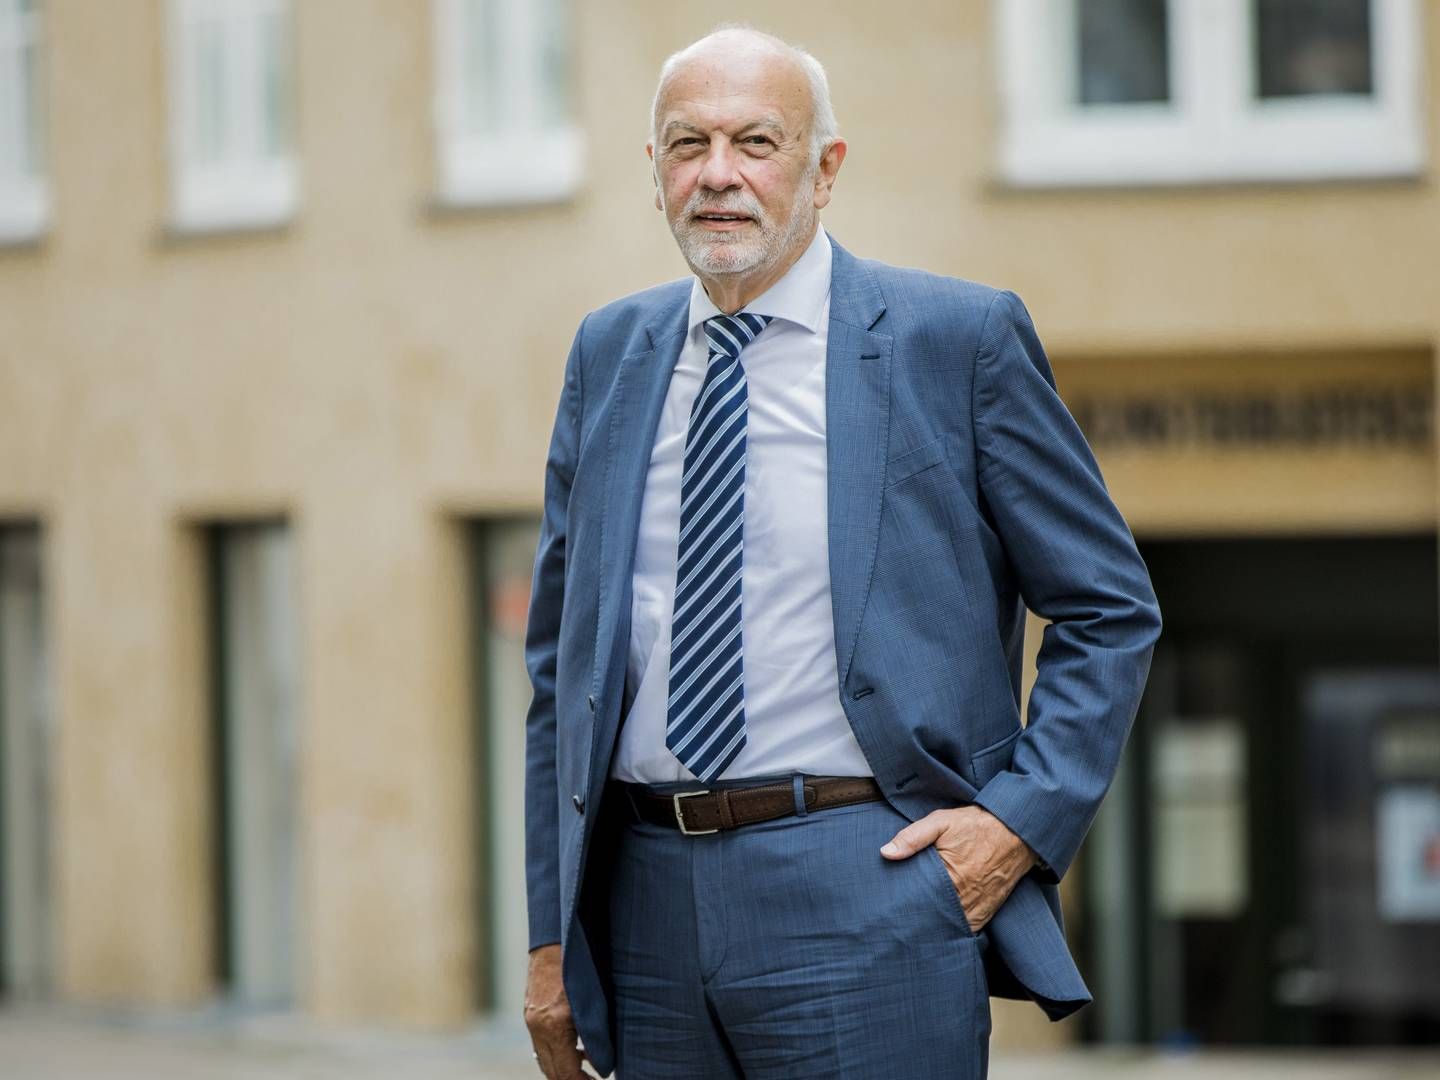 "Vi ønsker fortsat at udbygge vores position som Danmarks mest landsdækkende ejendomsmæglervirksomhed inden for erhvervsejendomme," lyder det fra Poul Erik Bech, formand i EDC Gruppen. | Foto: PR/EDC Poul Erik Bech